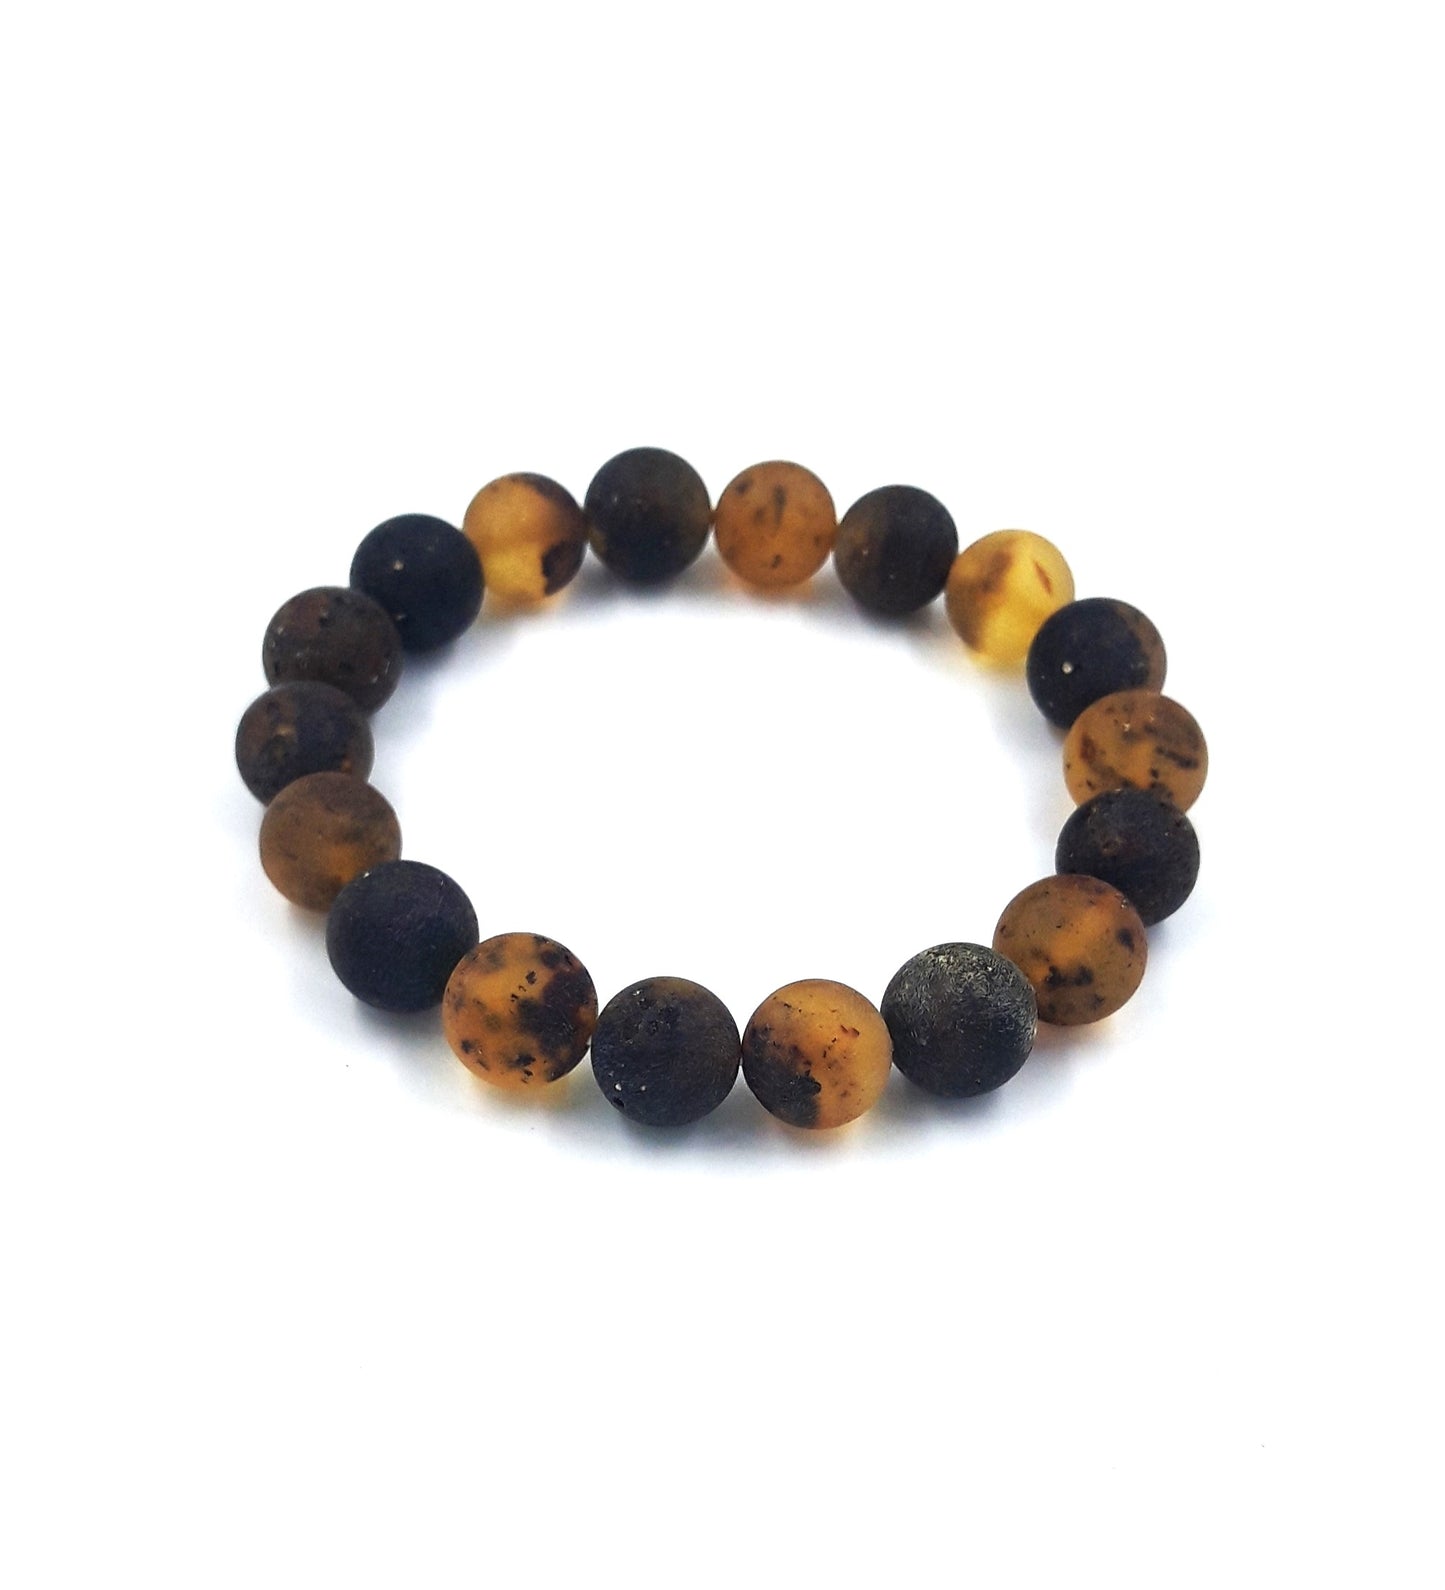 Baltic amber bracelets for adult